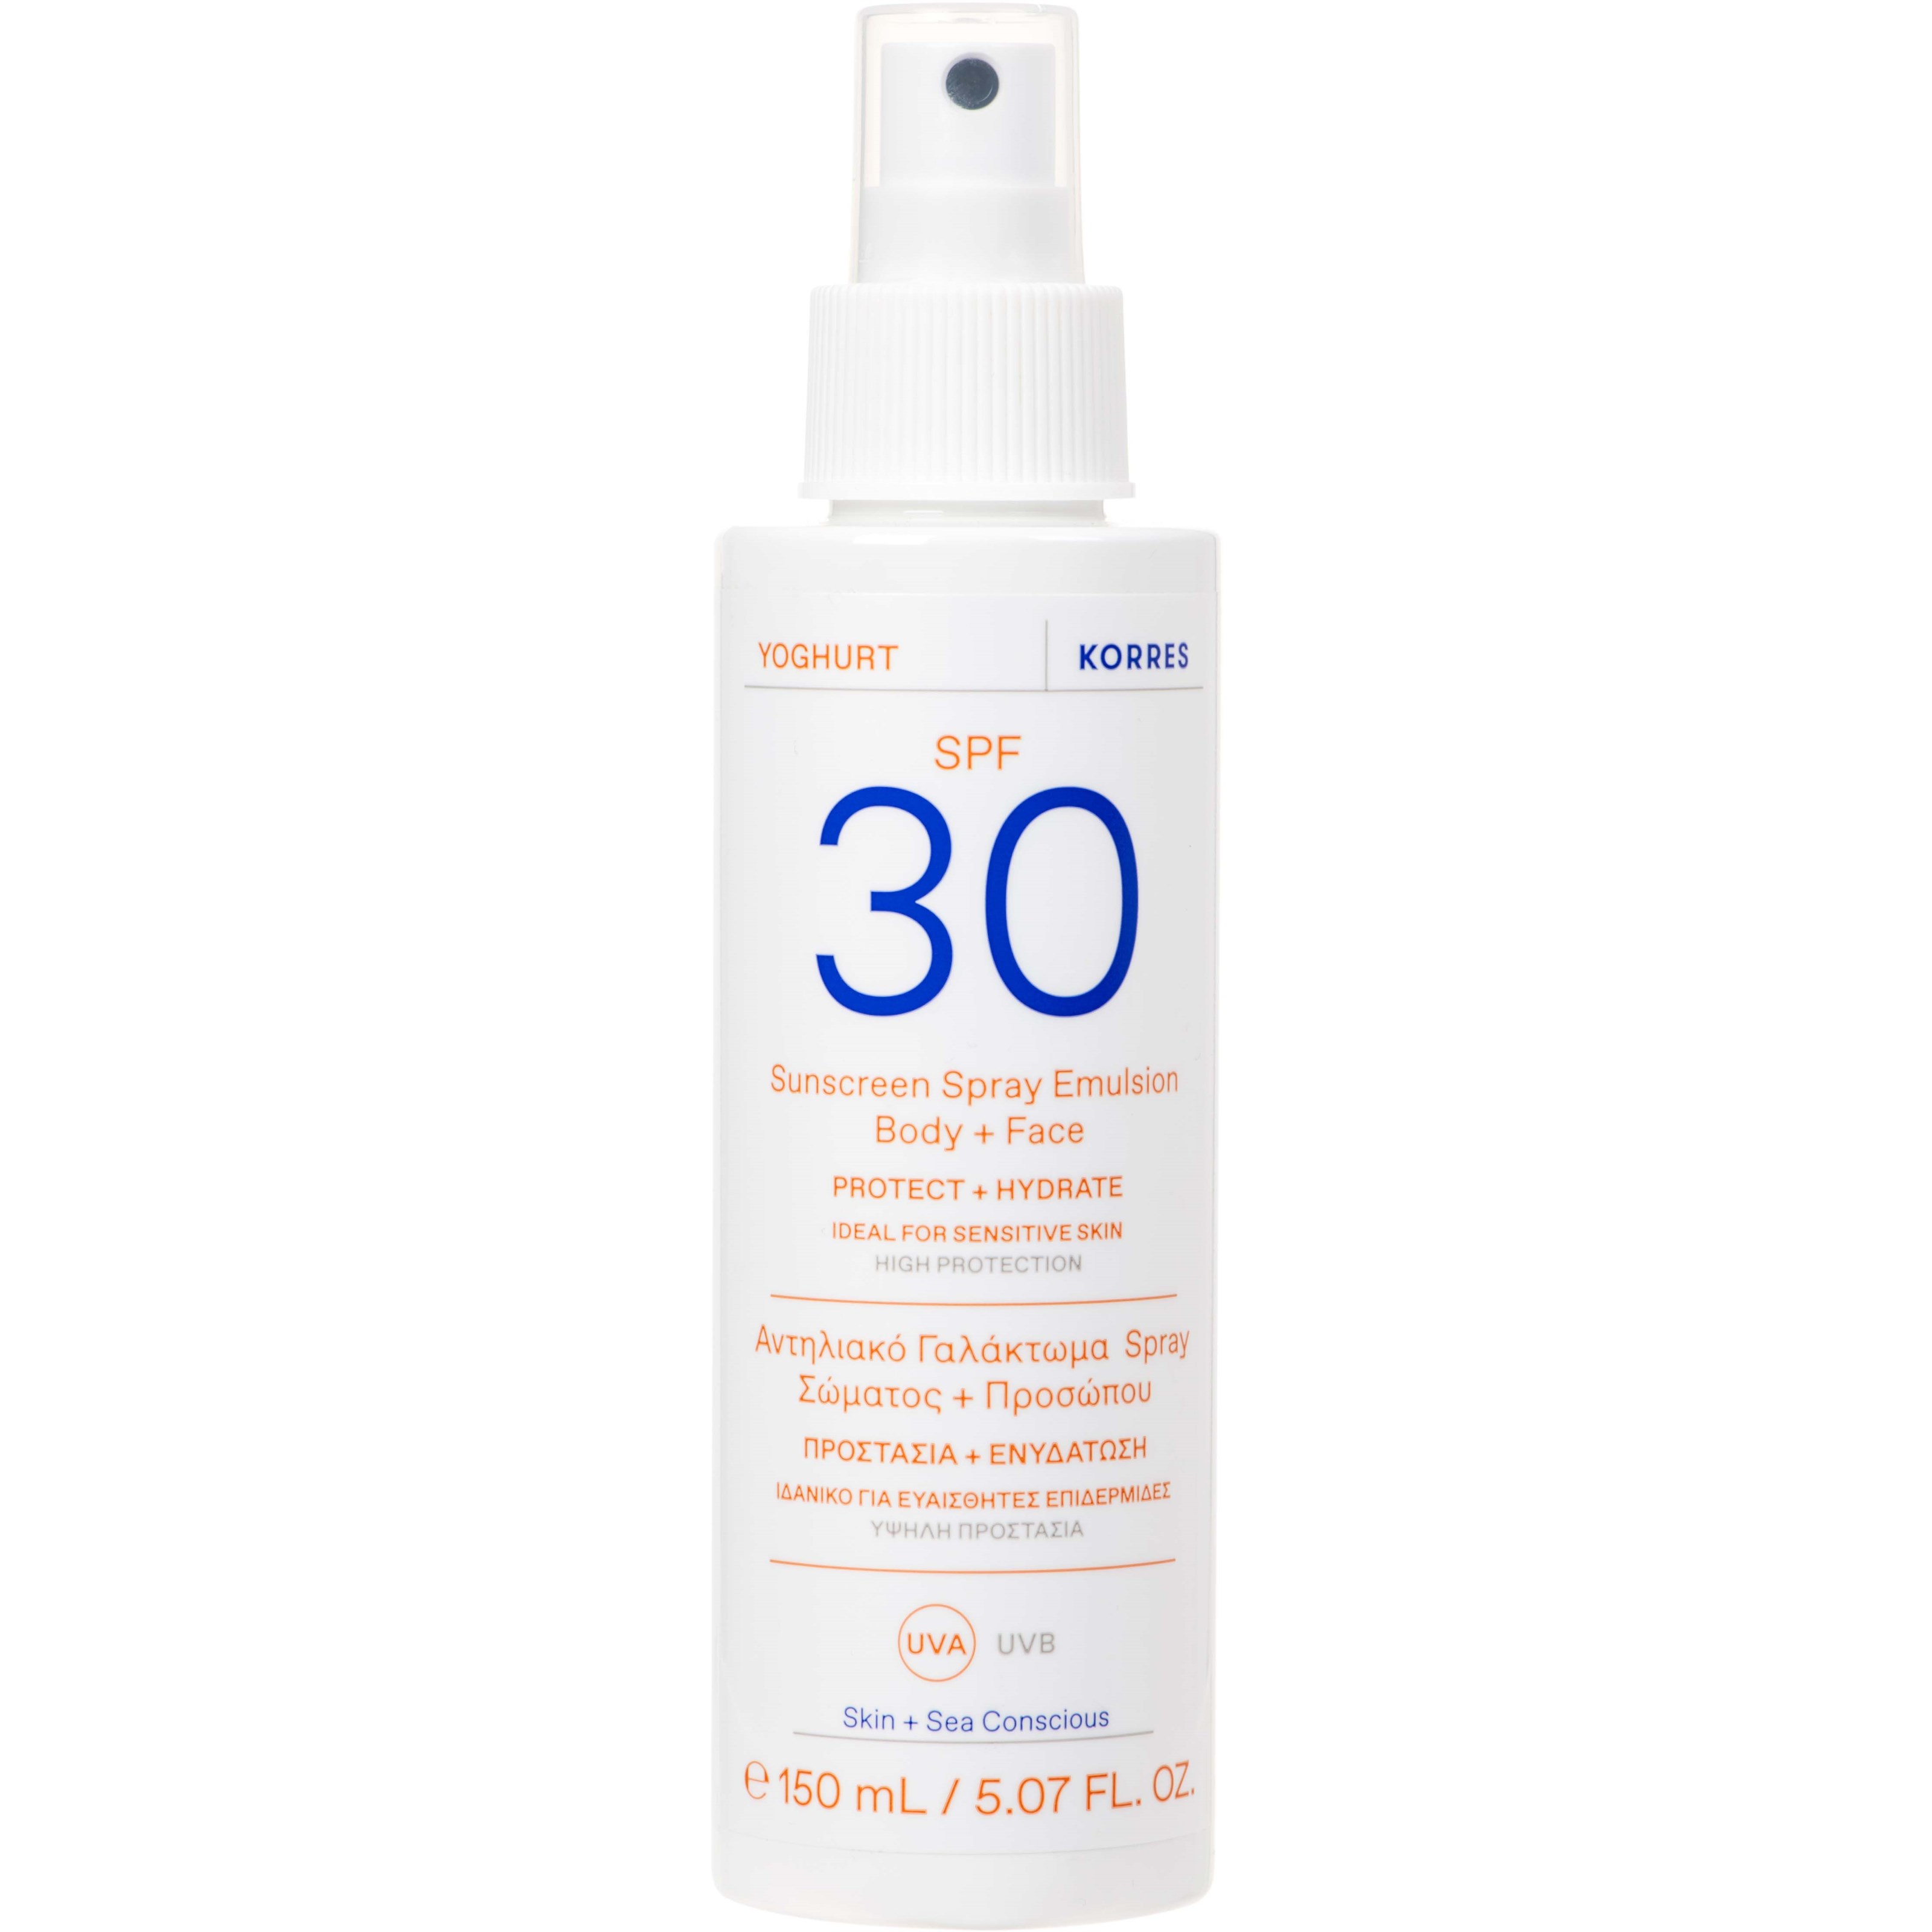 Läs mer om Korres Yoghurt Sunscreen Spray Emulsion SPF 30 Body + Face 150 ml